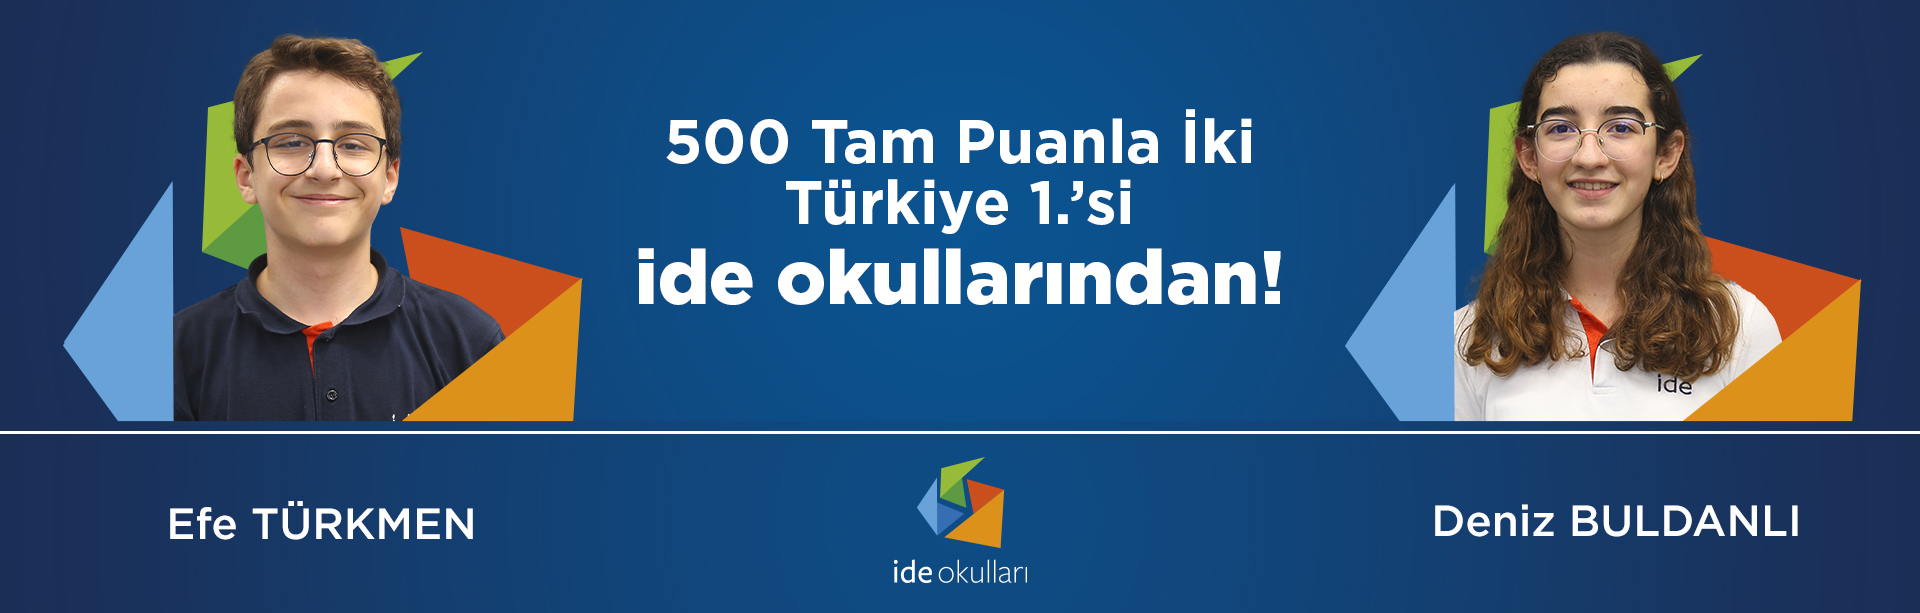 500 Tam Puanla İki Türkiye 1.’si ide okulları'ndan!